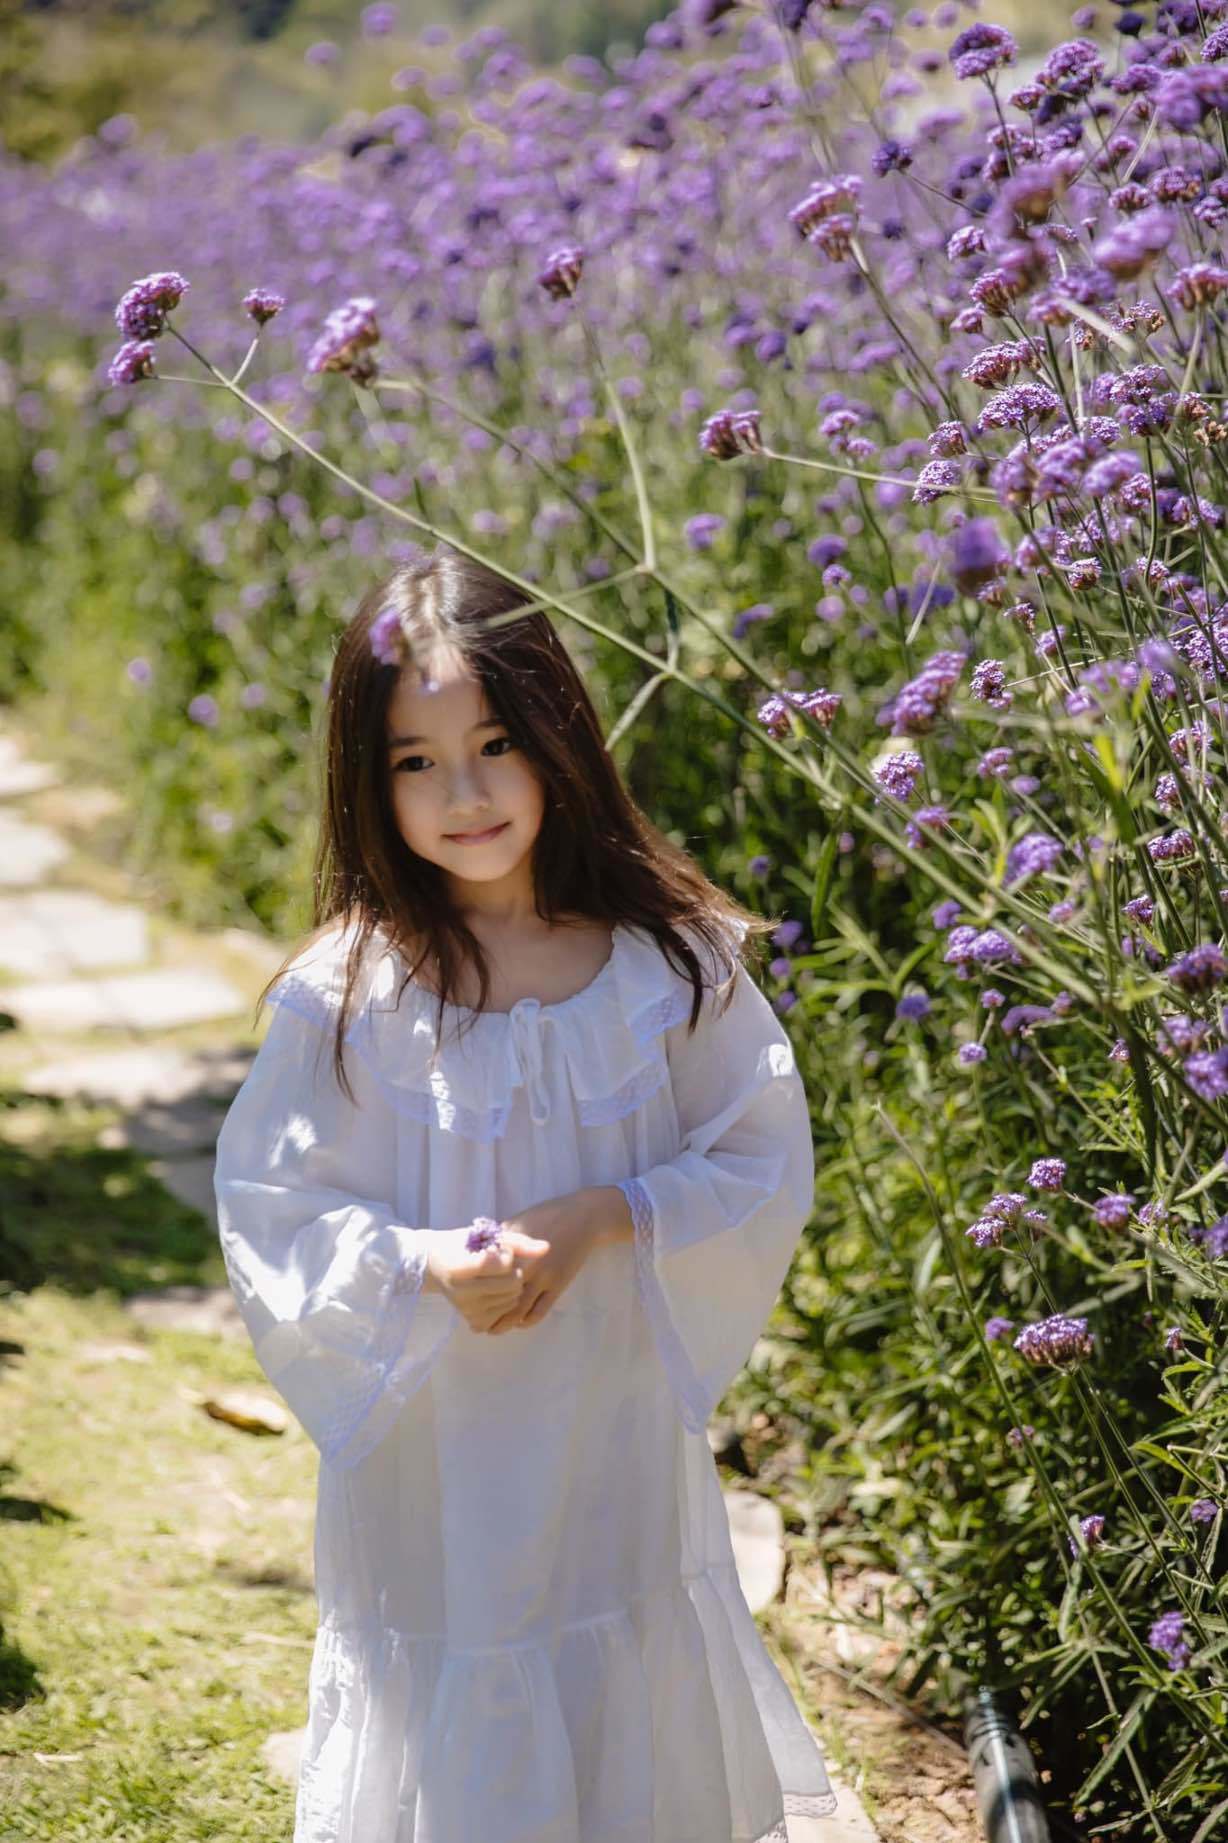 Con gái út của Hà Kiều Anh: Mới 7 tuổi mà khí chất đài các khiến Hà Tăng phải nức nở - Ảnh 12